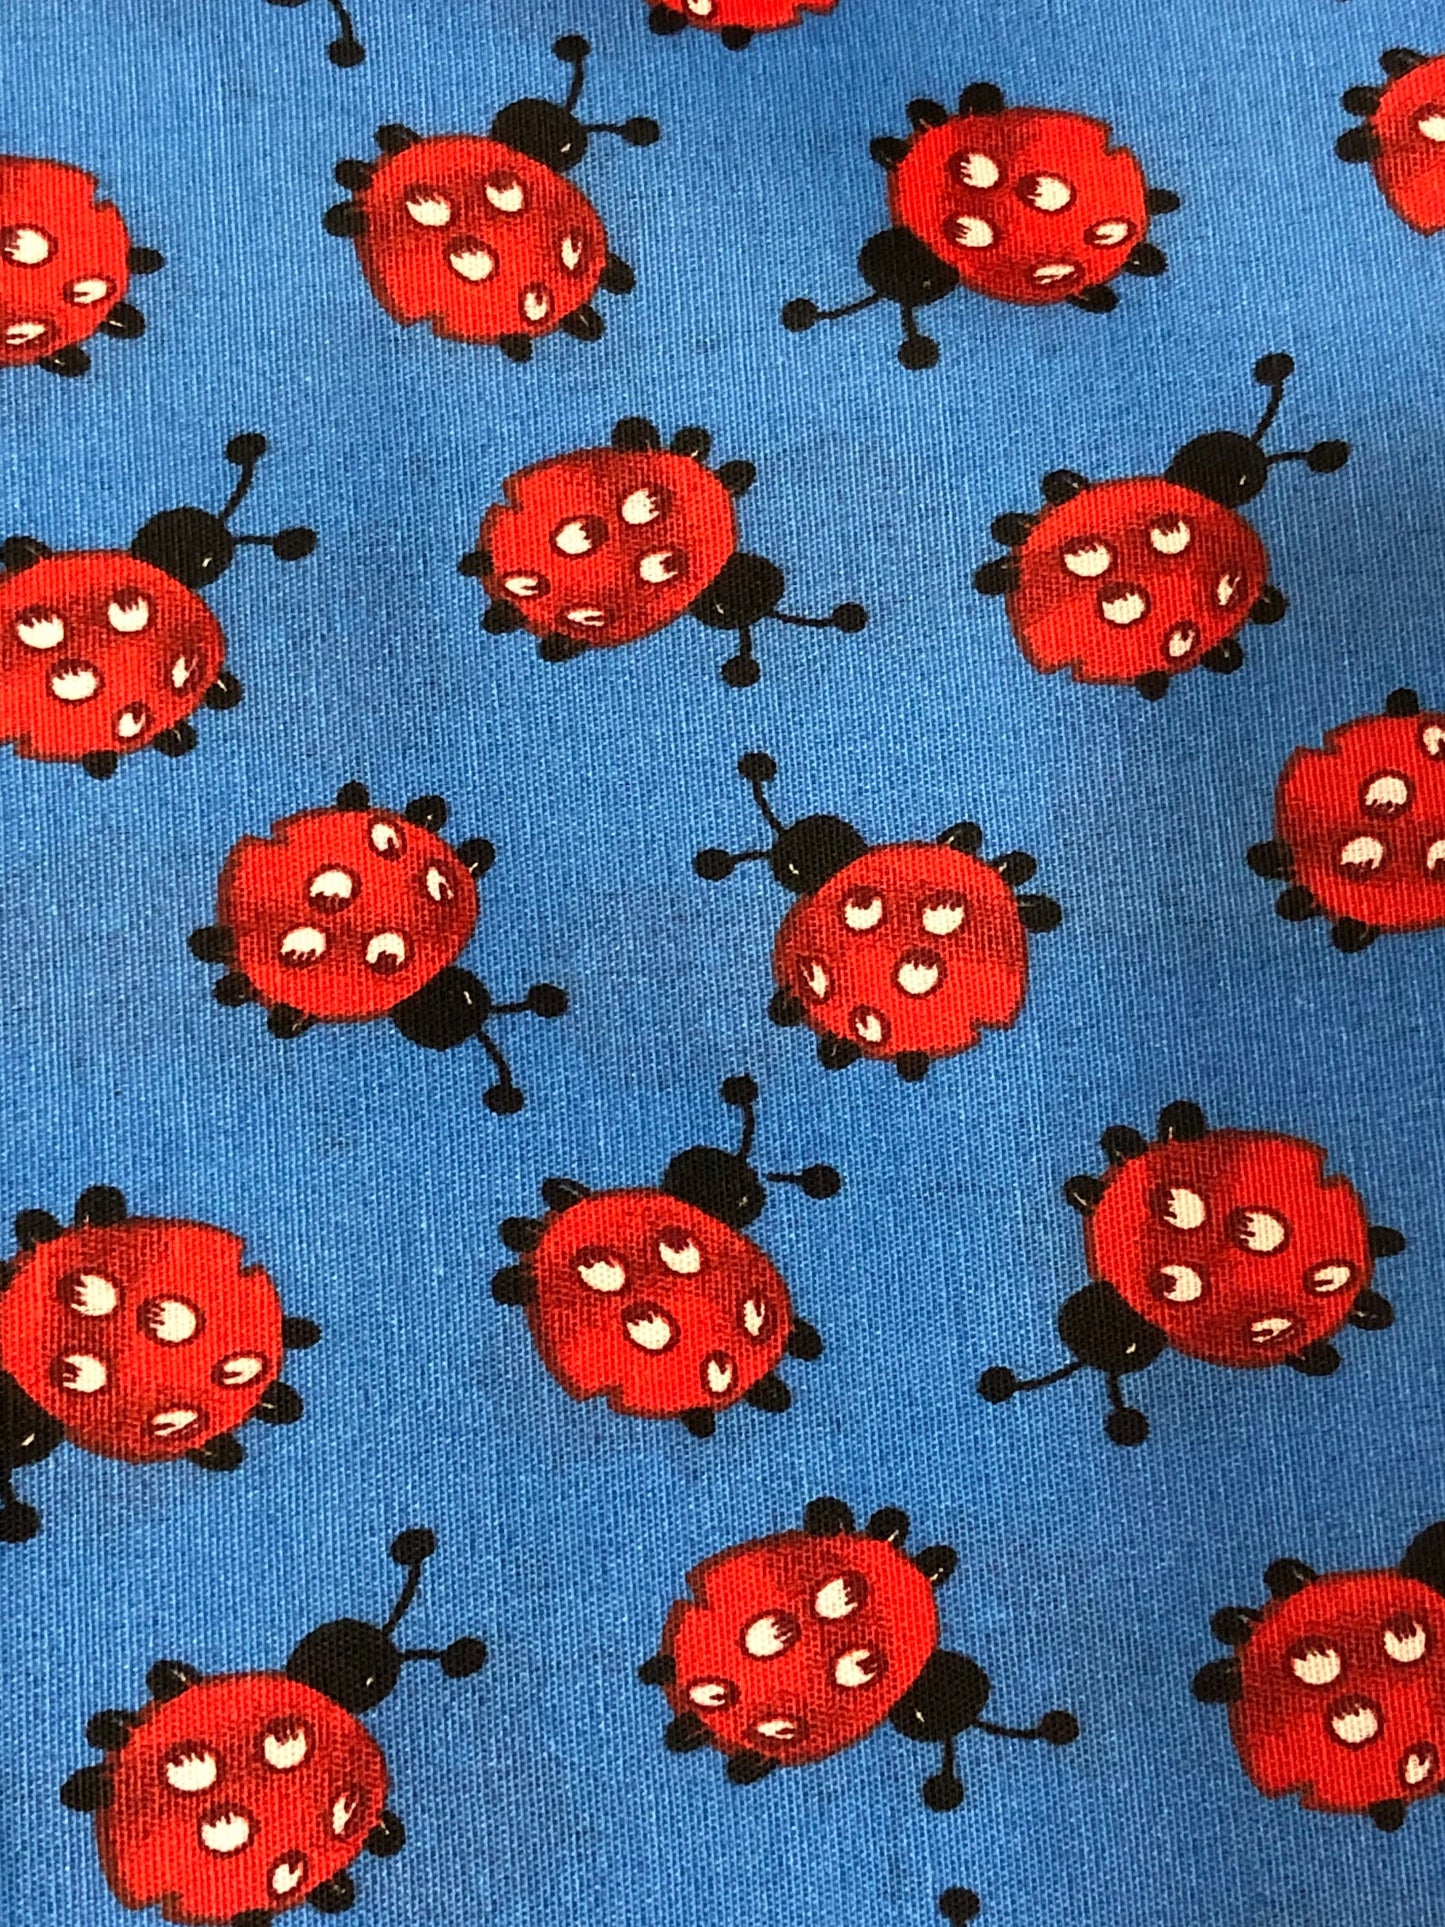 Red ladybug on Blue